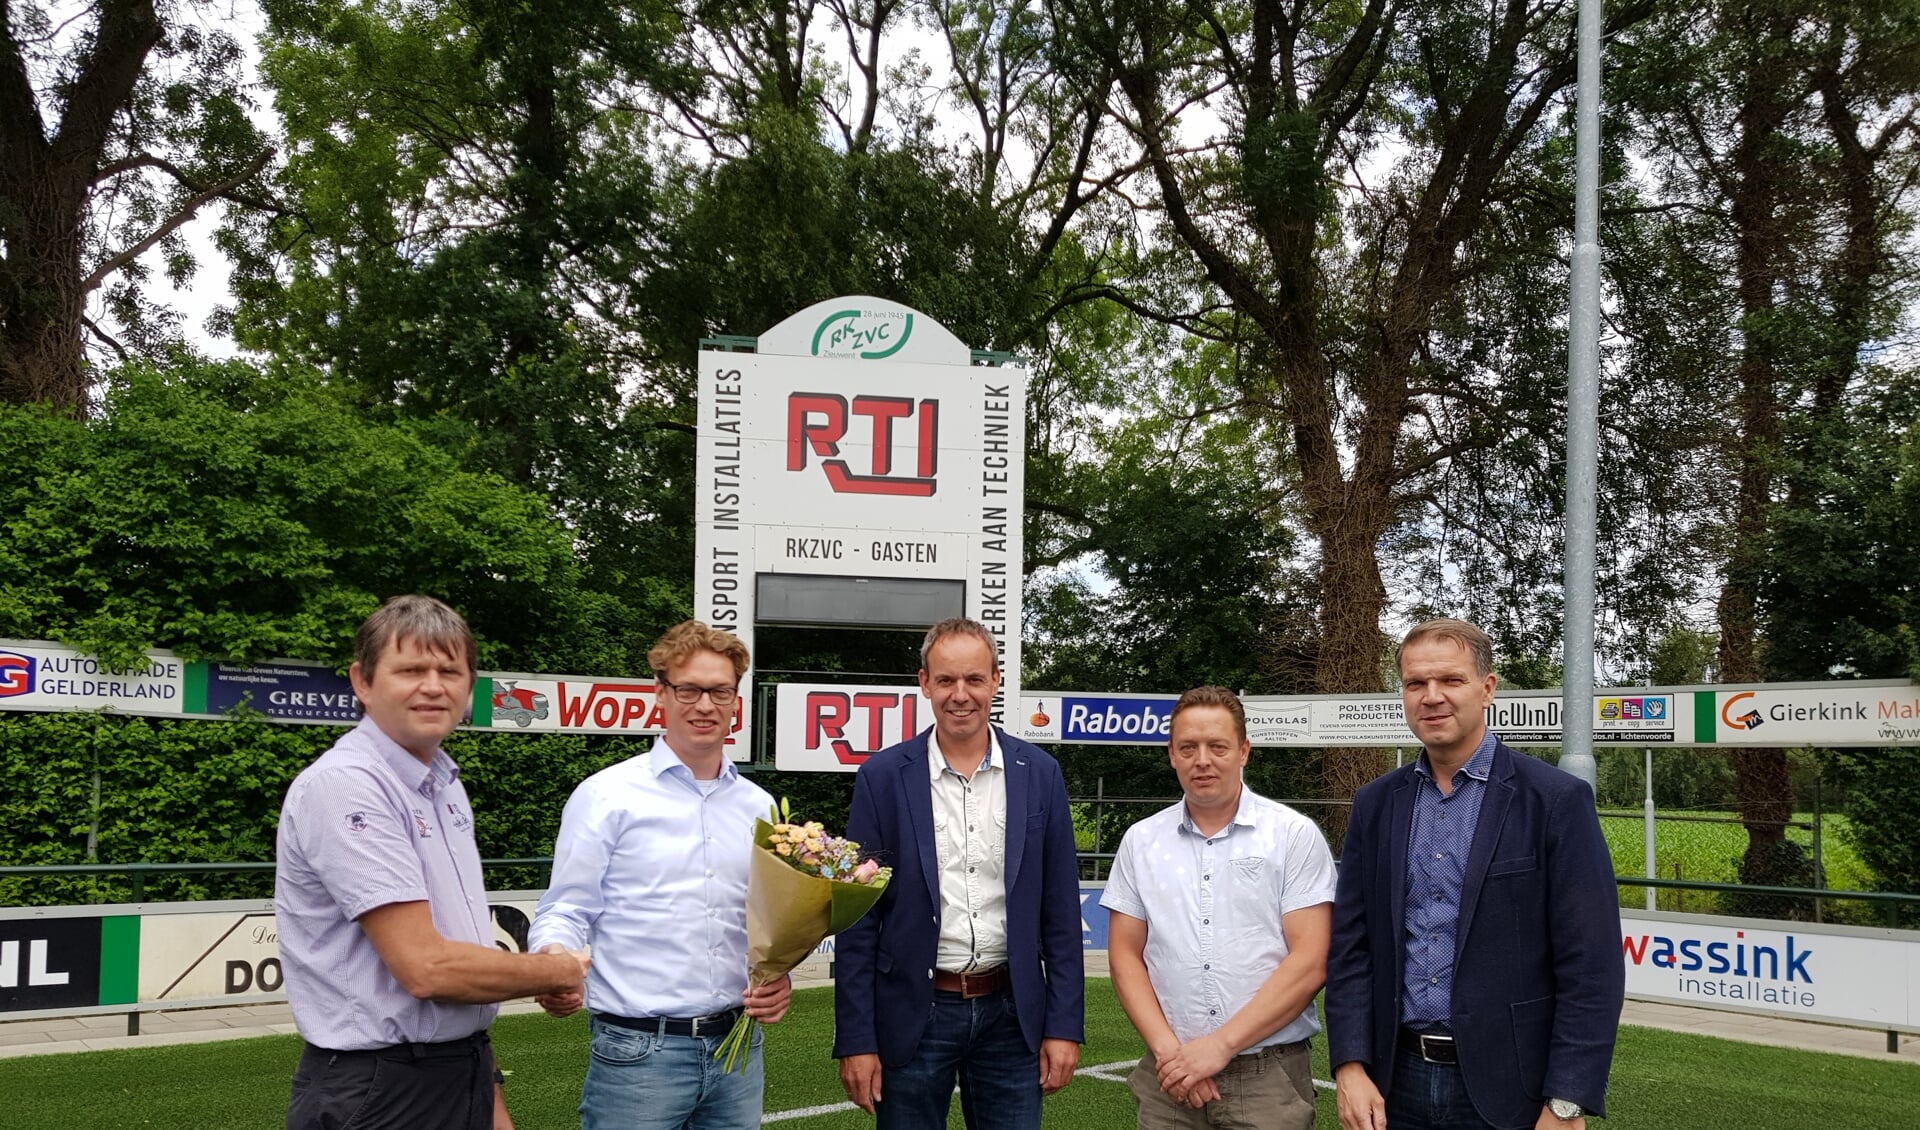 Op de foto (vlnr): Johnny Cuppers (Voorzitter RKZVC), Han Rouwhorst, Manfred Harbers en Normen Rouwhorst (Directie RTI), Joris Wassink (Voorzitter BC RKZVC). Foto: PR